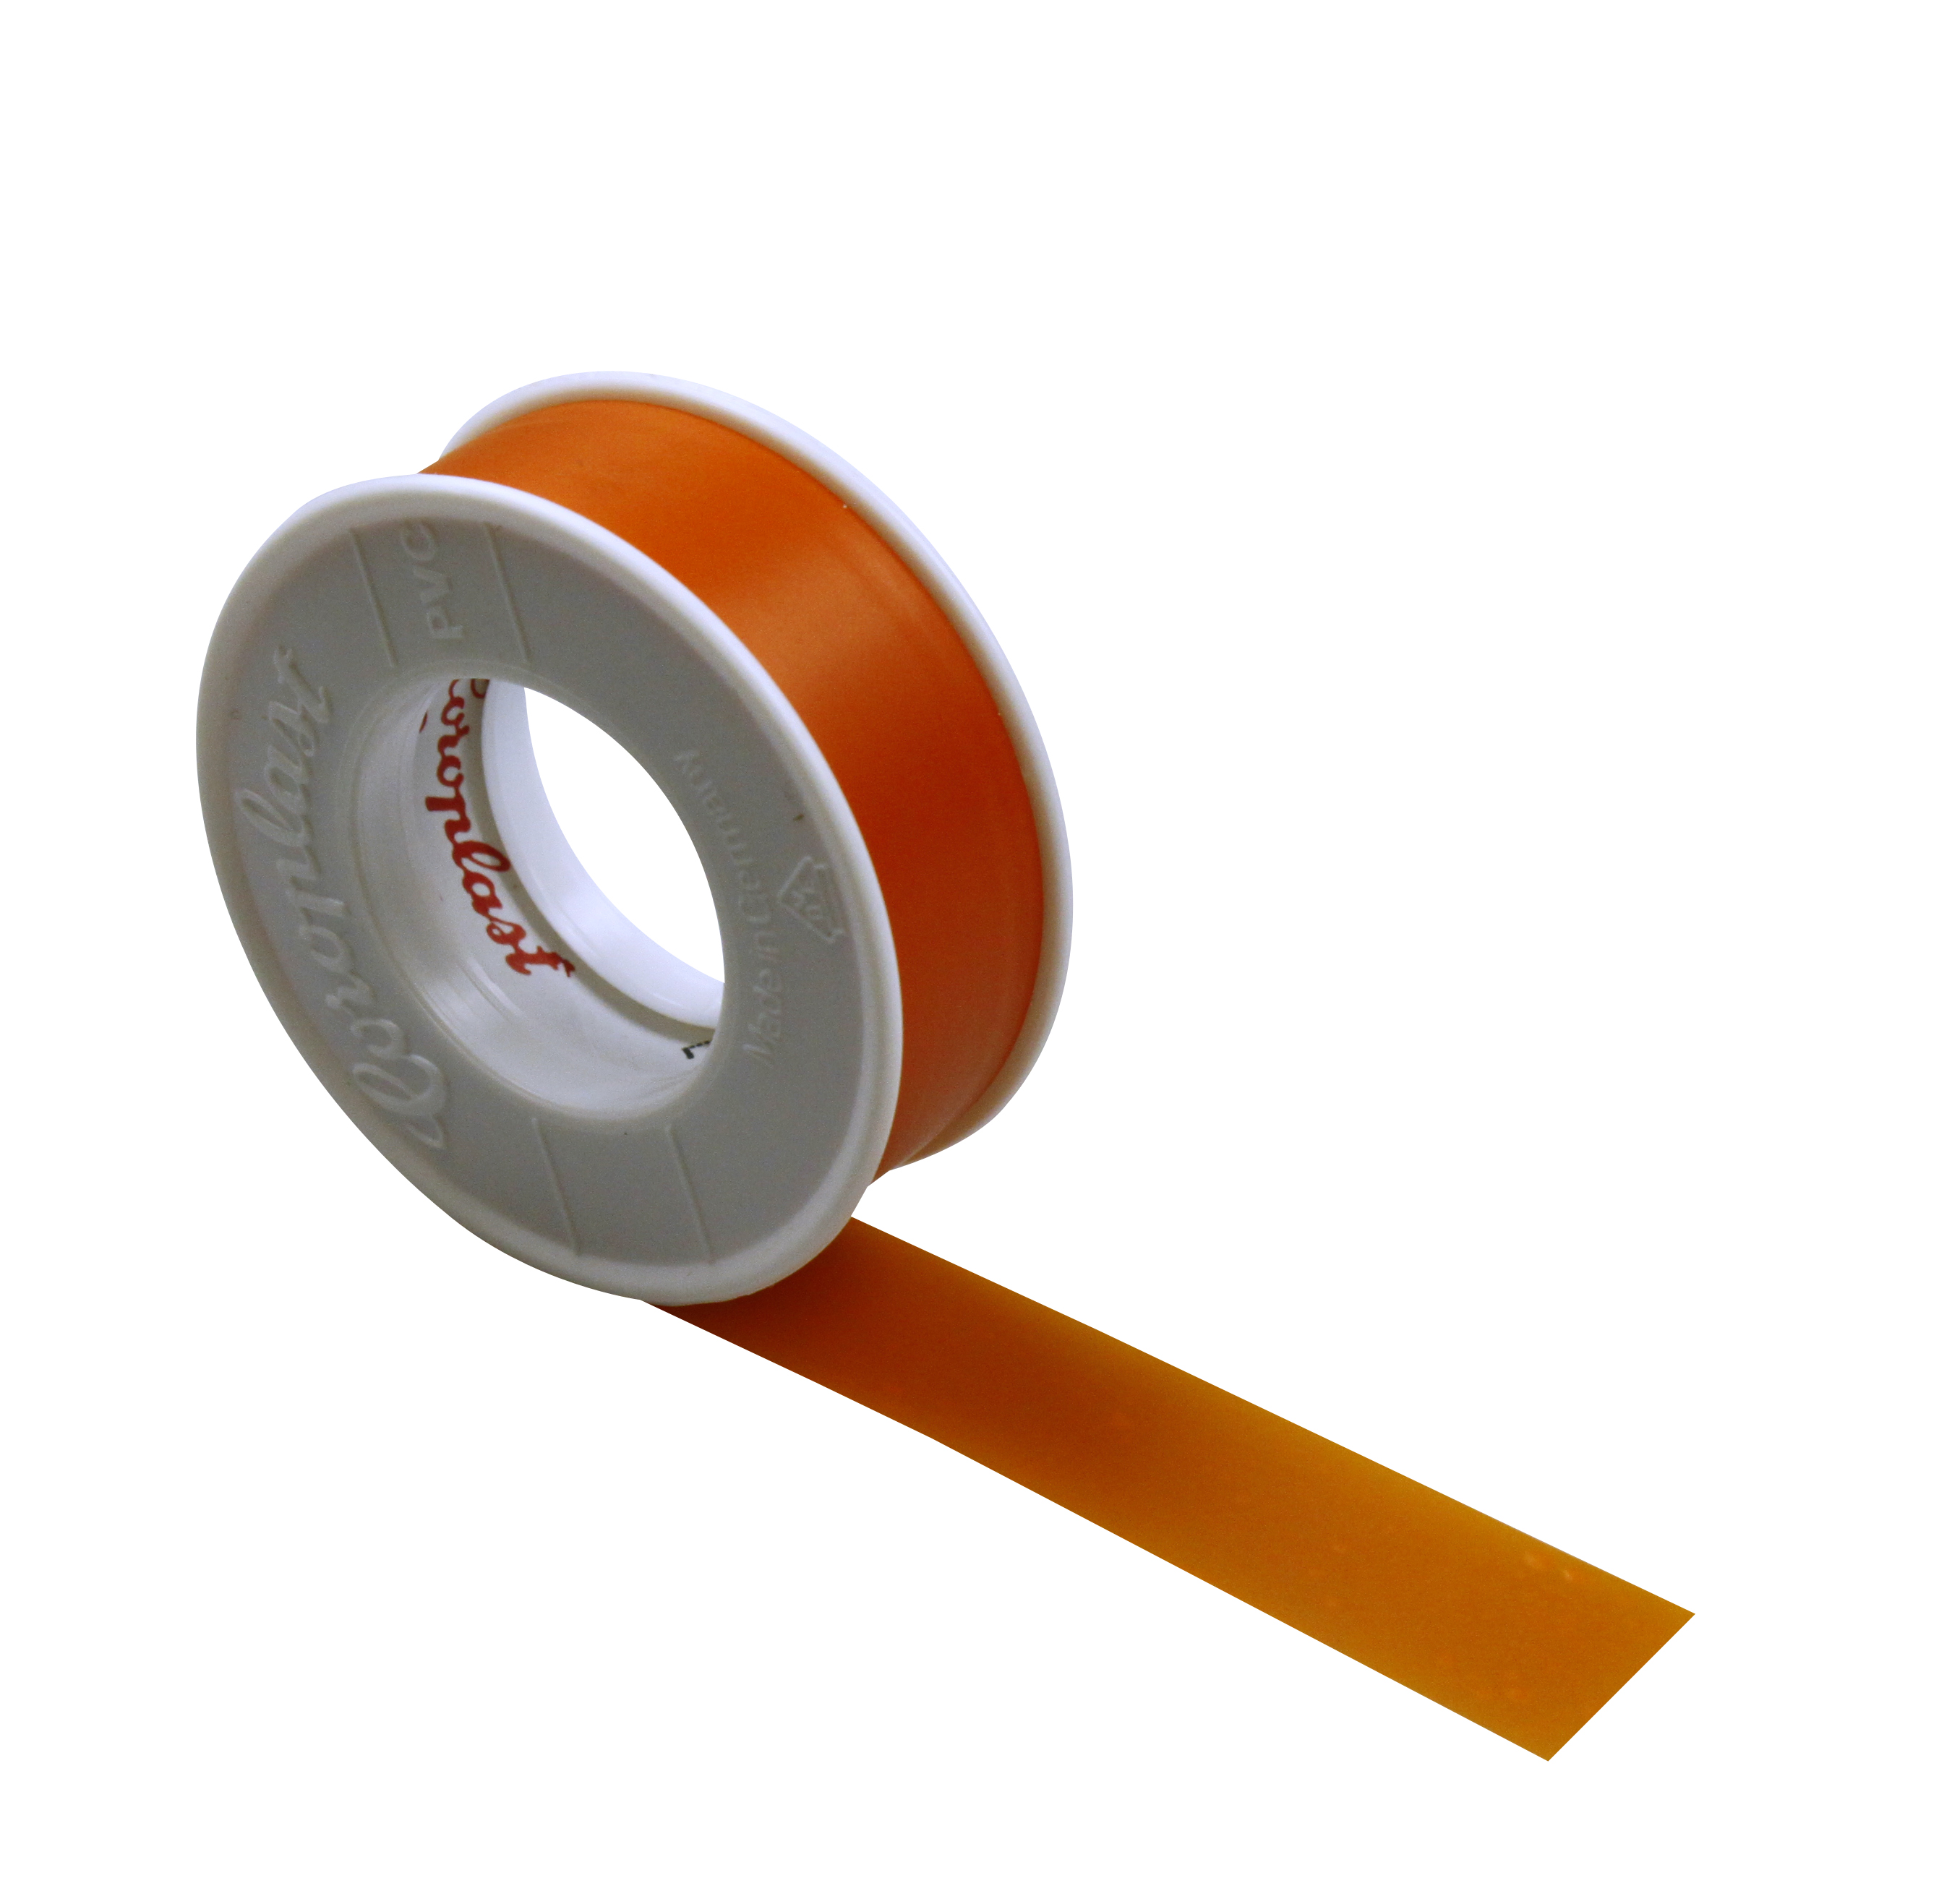 Foto: Isolierband orange 15mm x 10m-Coroplast (c) Schrack